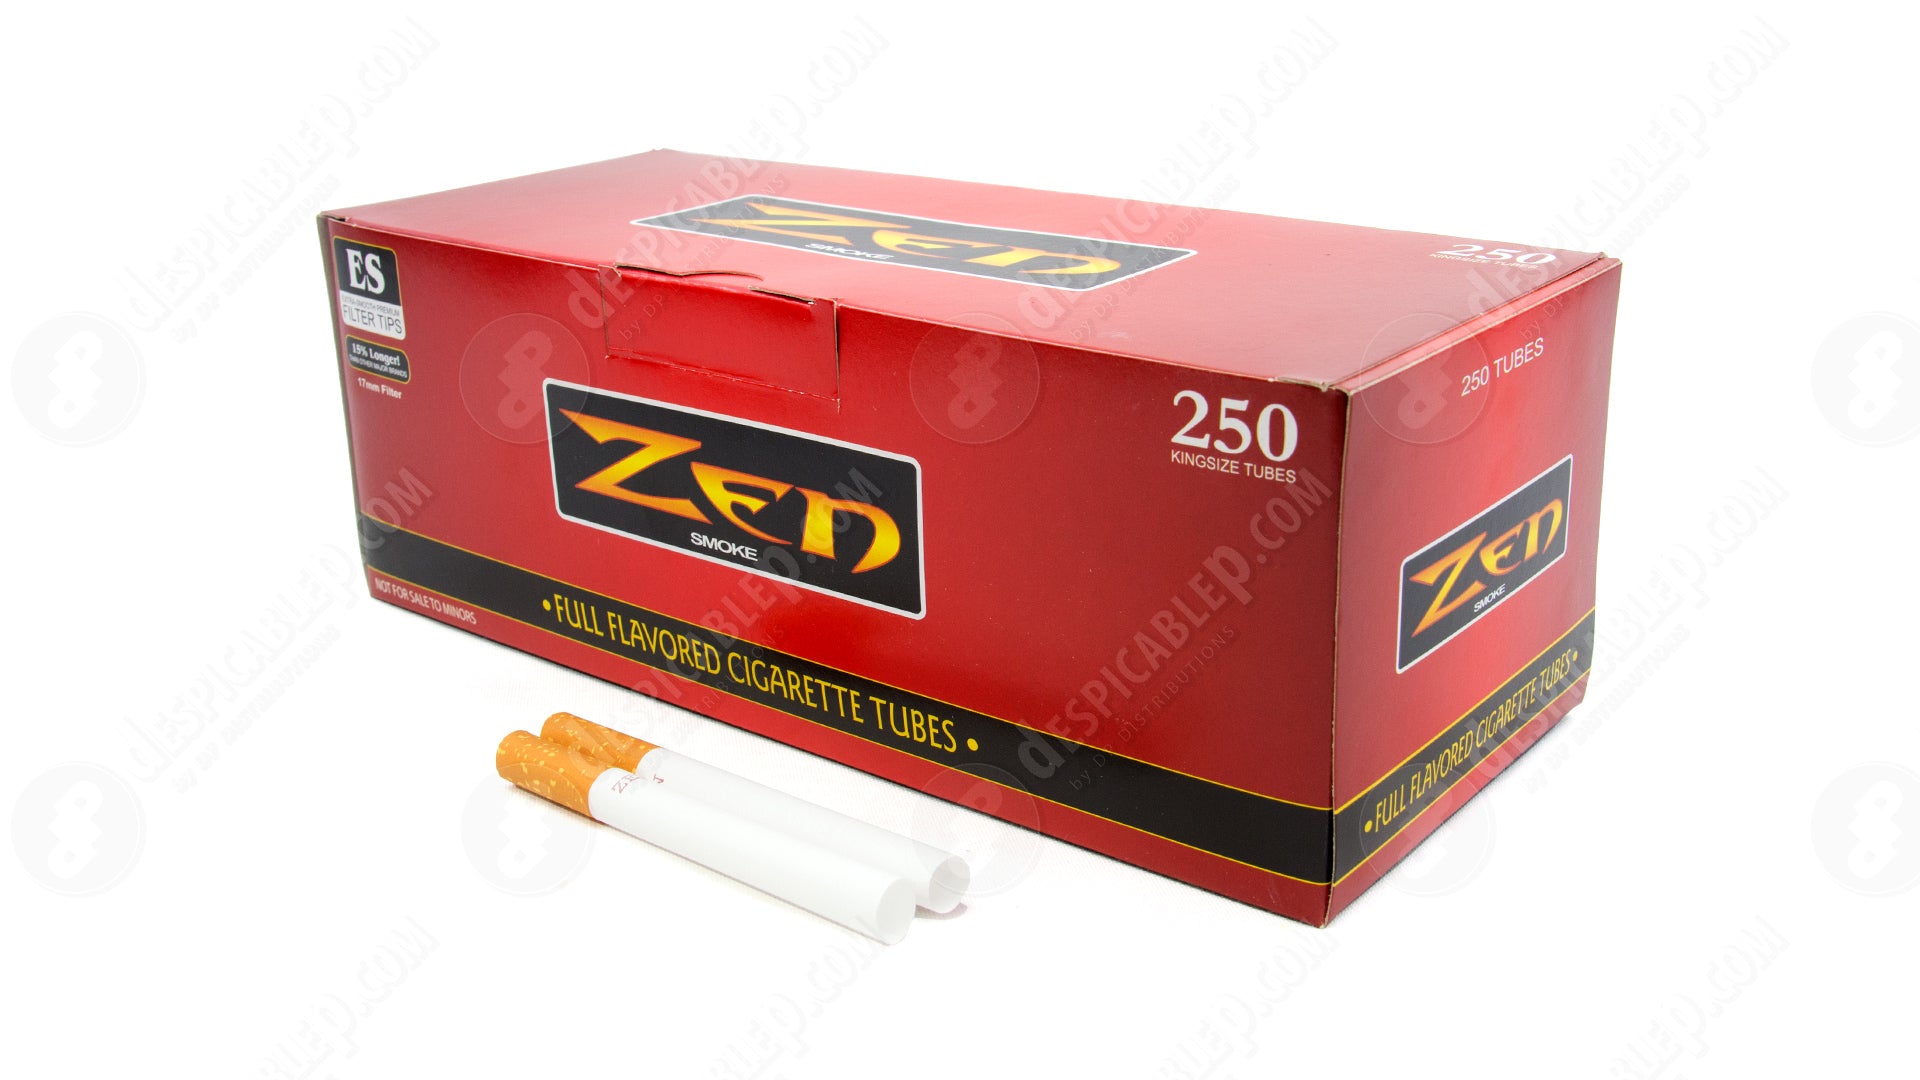  Zen Cigarette Tubes, Menthol, 100's